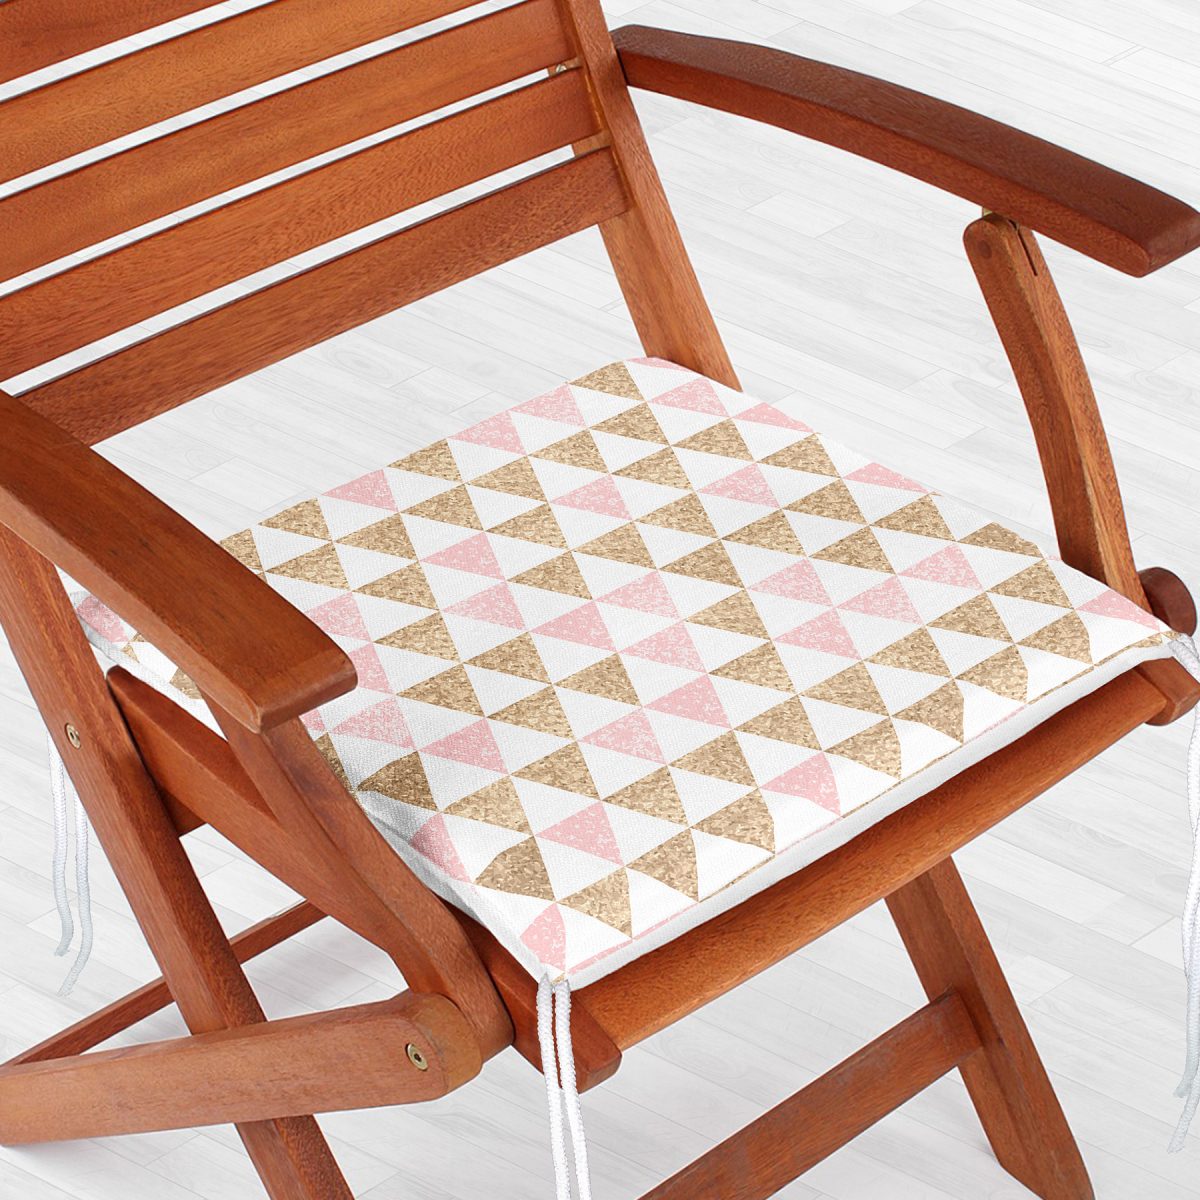 Üçgen Pudra Renkler Özel Tasarımlı Dekoratif Fermuarlı Sandalye Minderi Realhomes